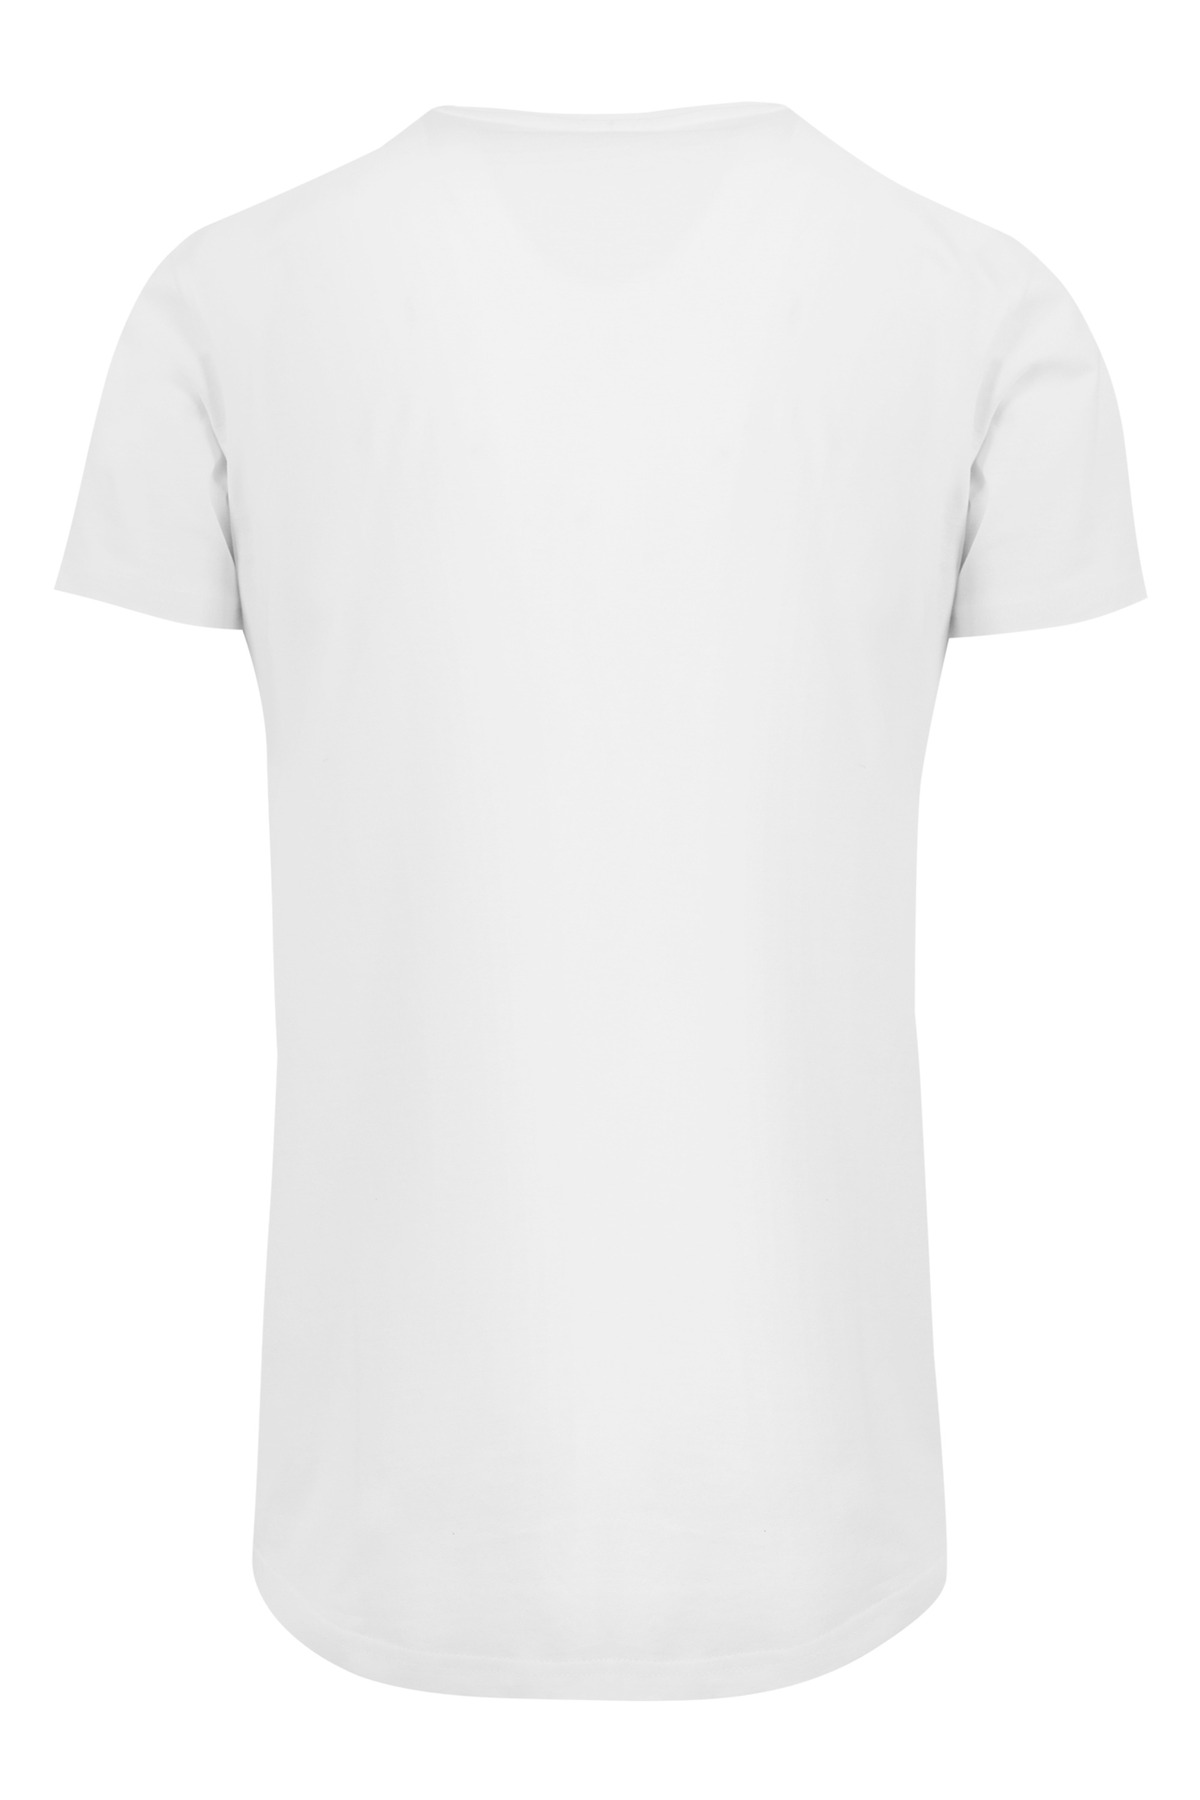 Regular - T-Shirt Trendyol Weiß - Fit F4NT4STIC -